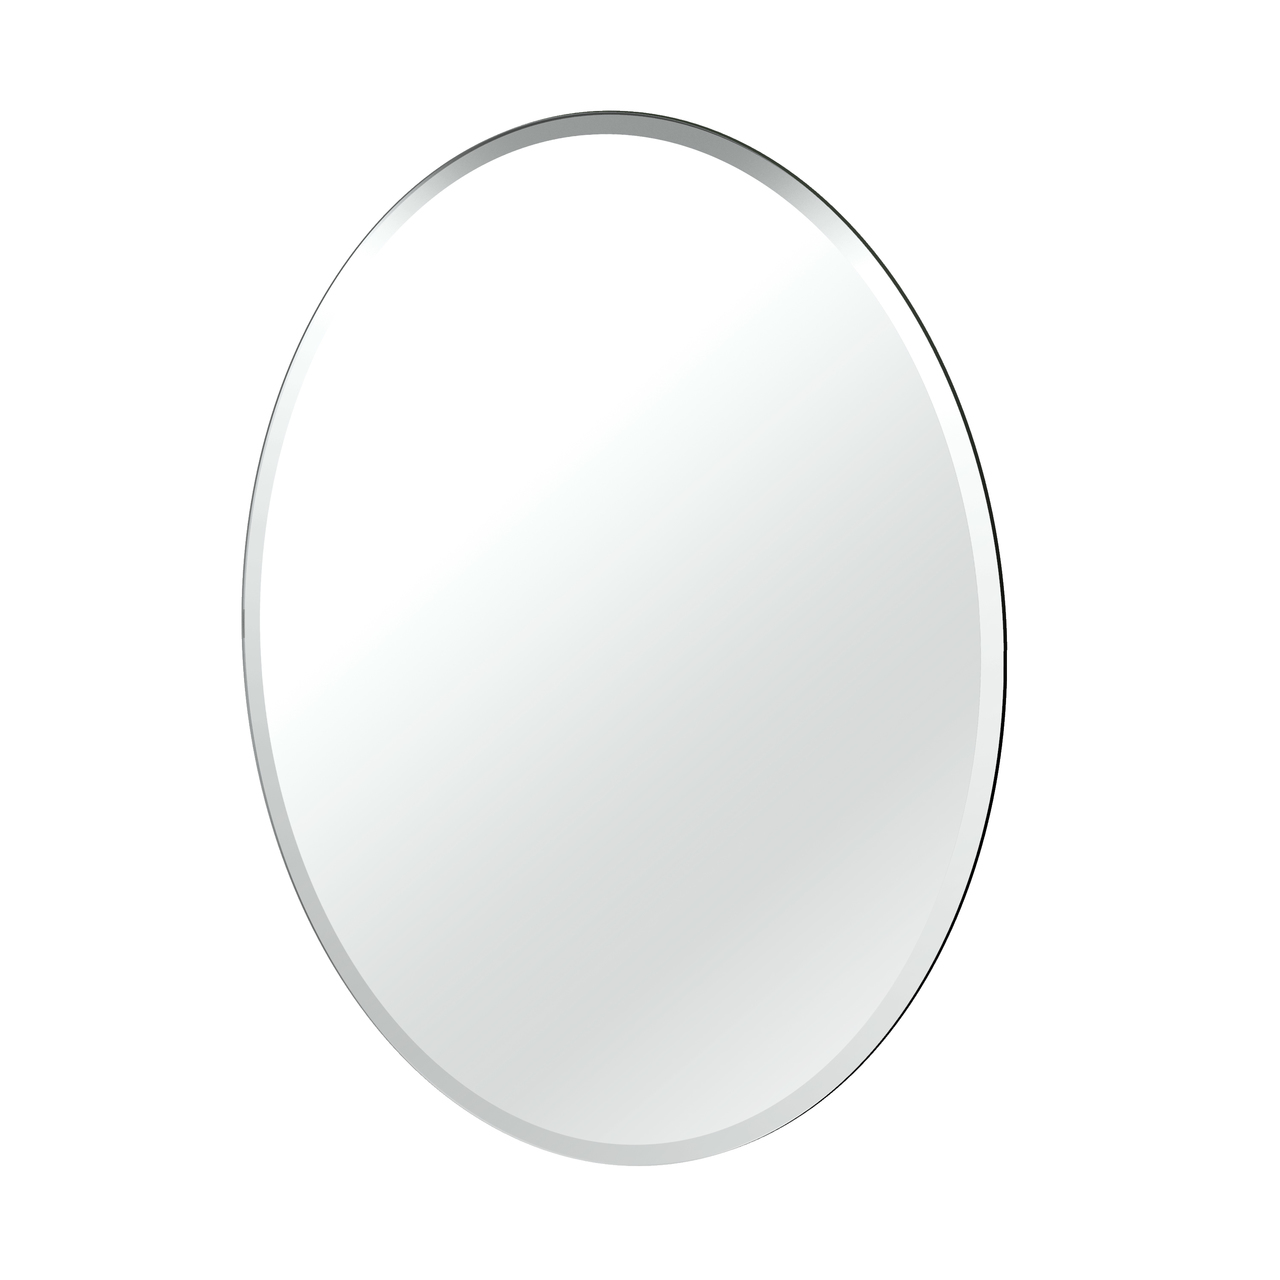 Зеркало овальное. Овальное зеркало для ванной комнаты. Зеркало настенное овальное для ванны. Овальное зеркало в деревянной раме.